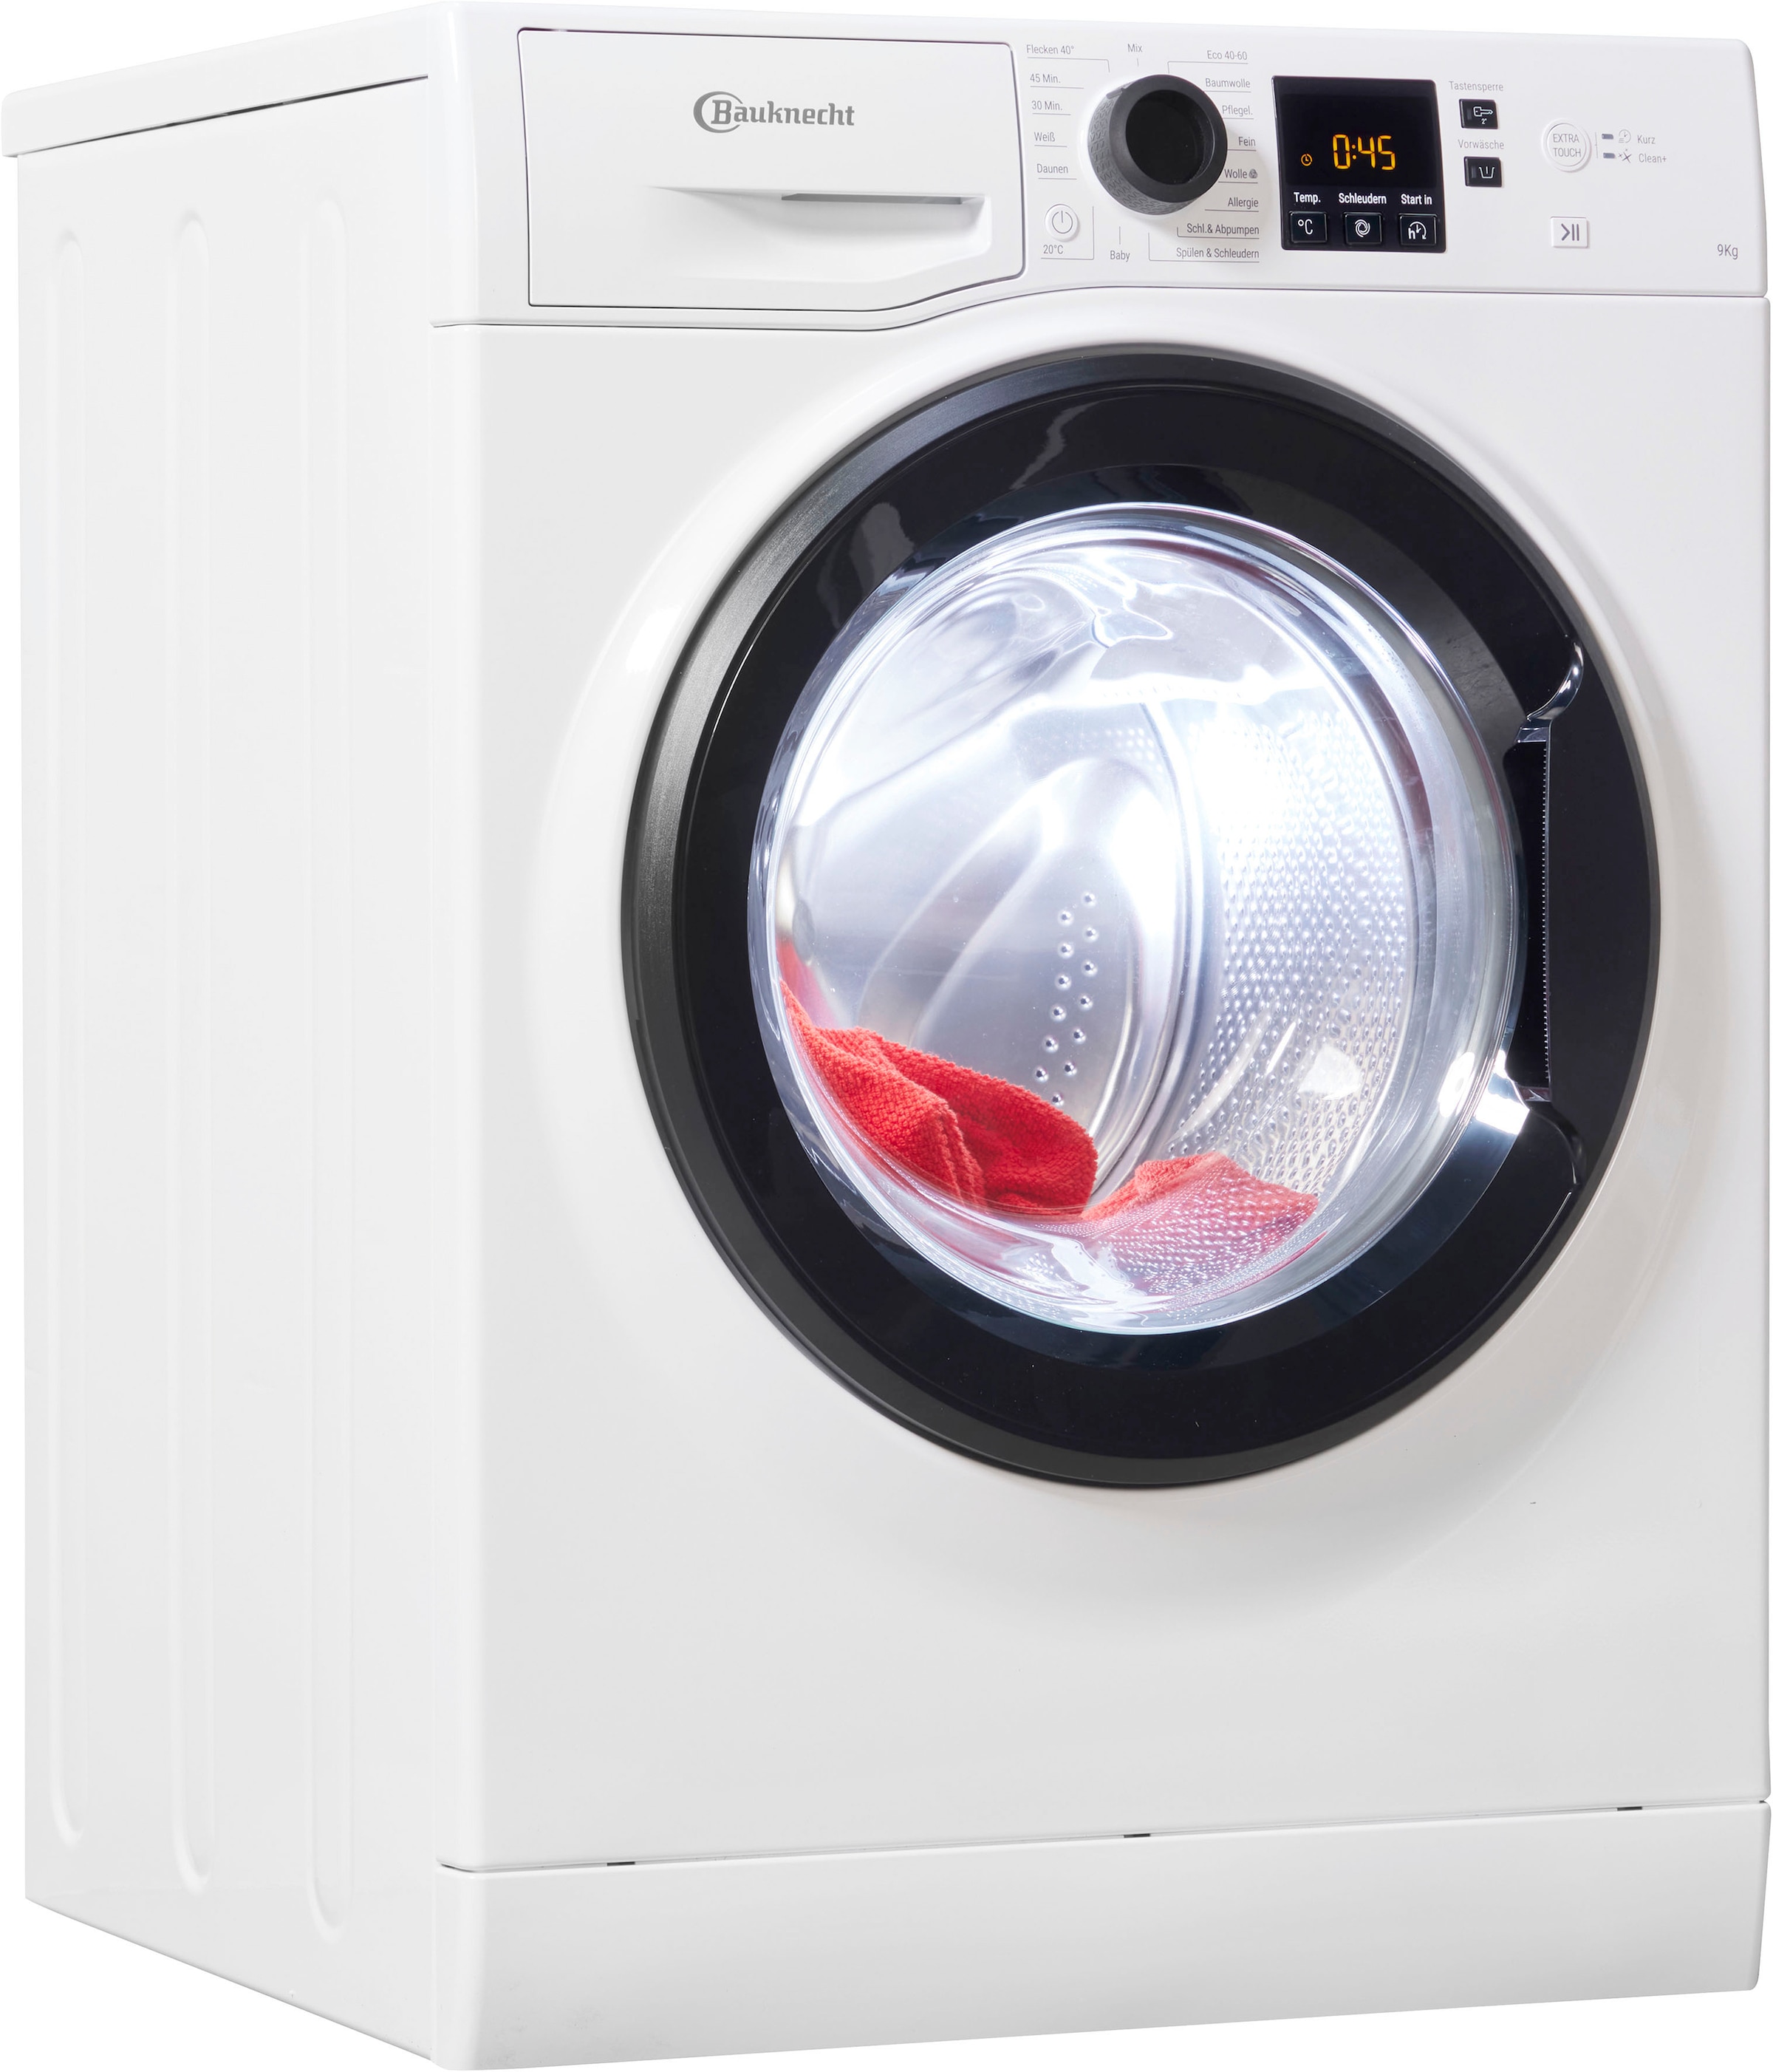 Waschmaschinen bestellen hat Jeder Teilzahlung ▻ Universal. Bauknecht auf jetzt sein